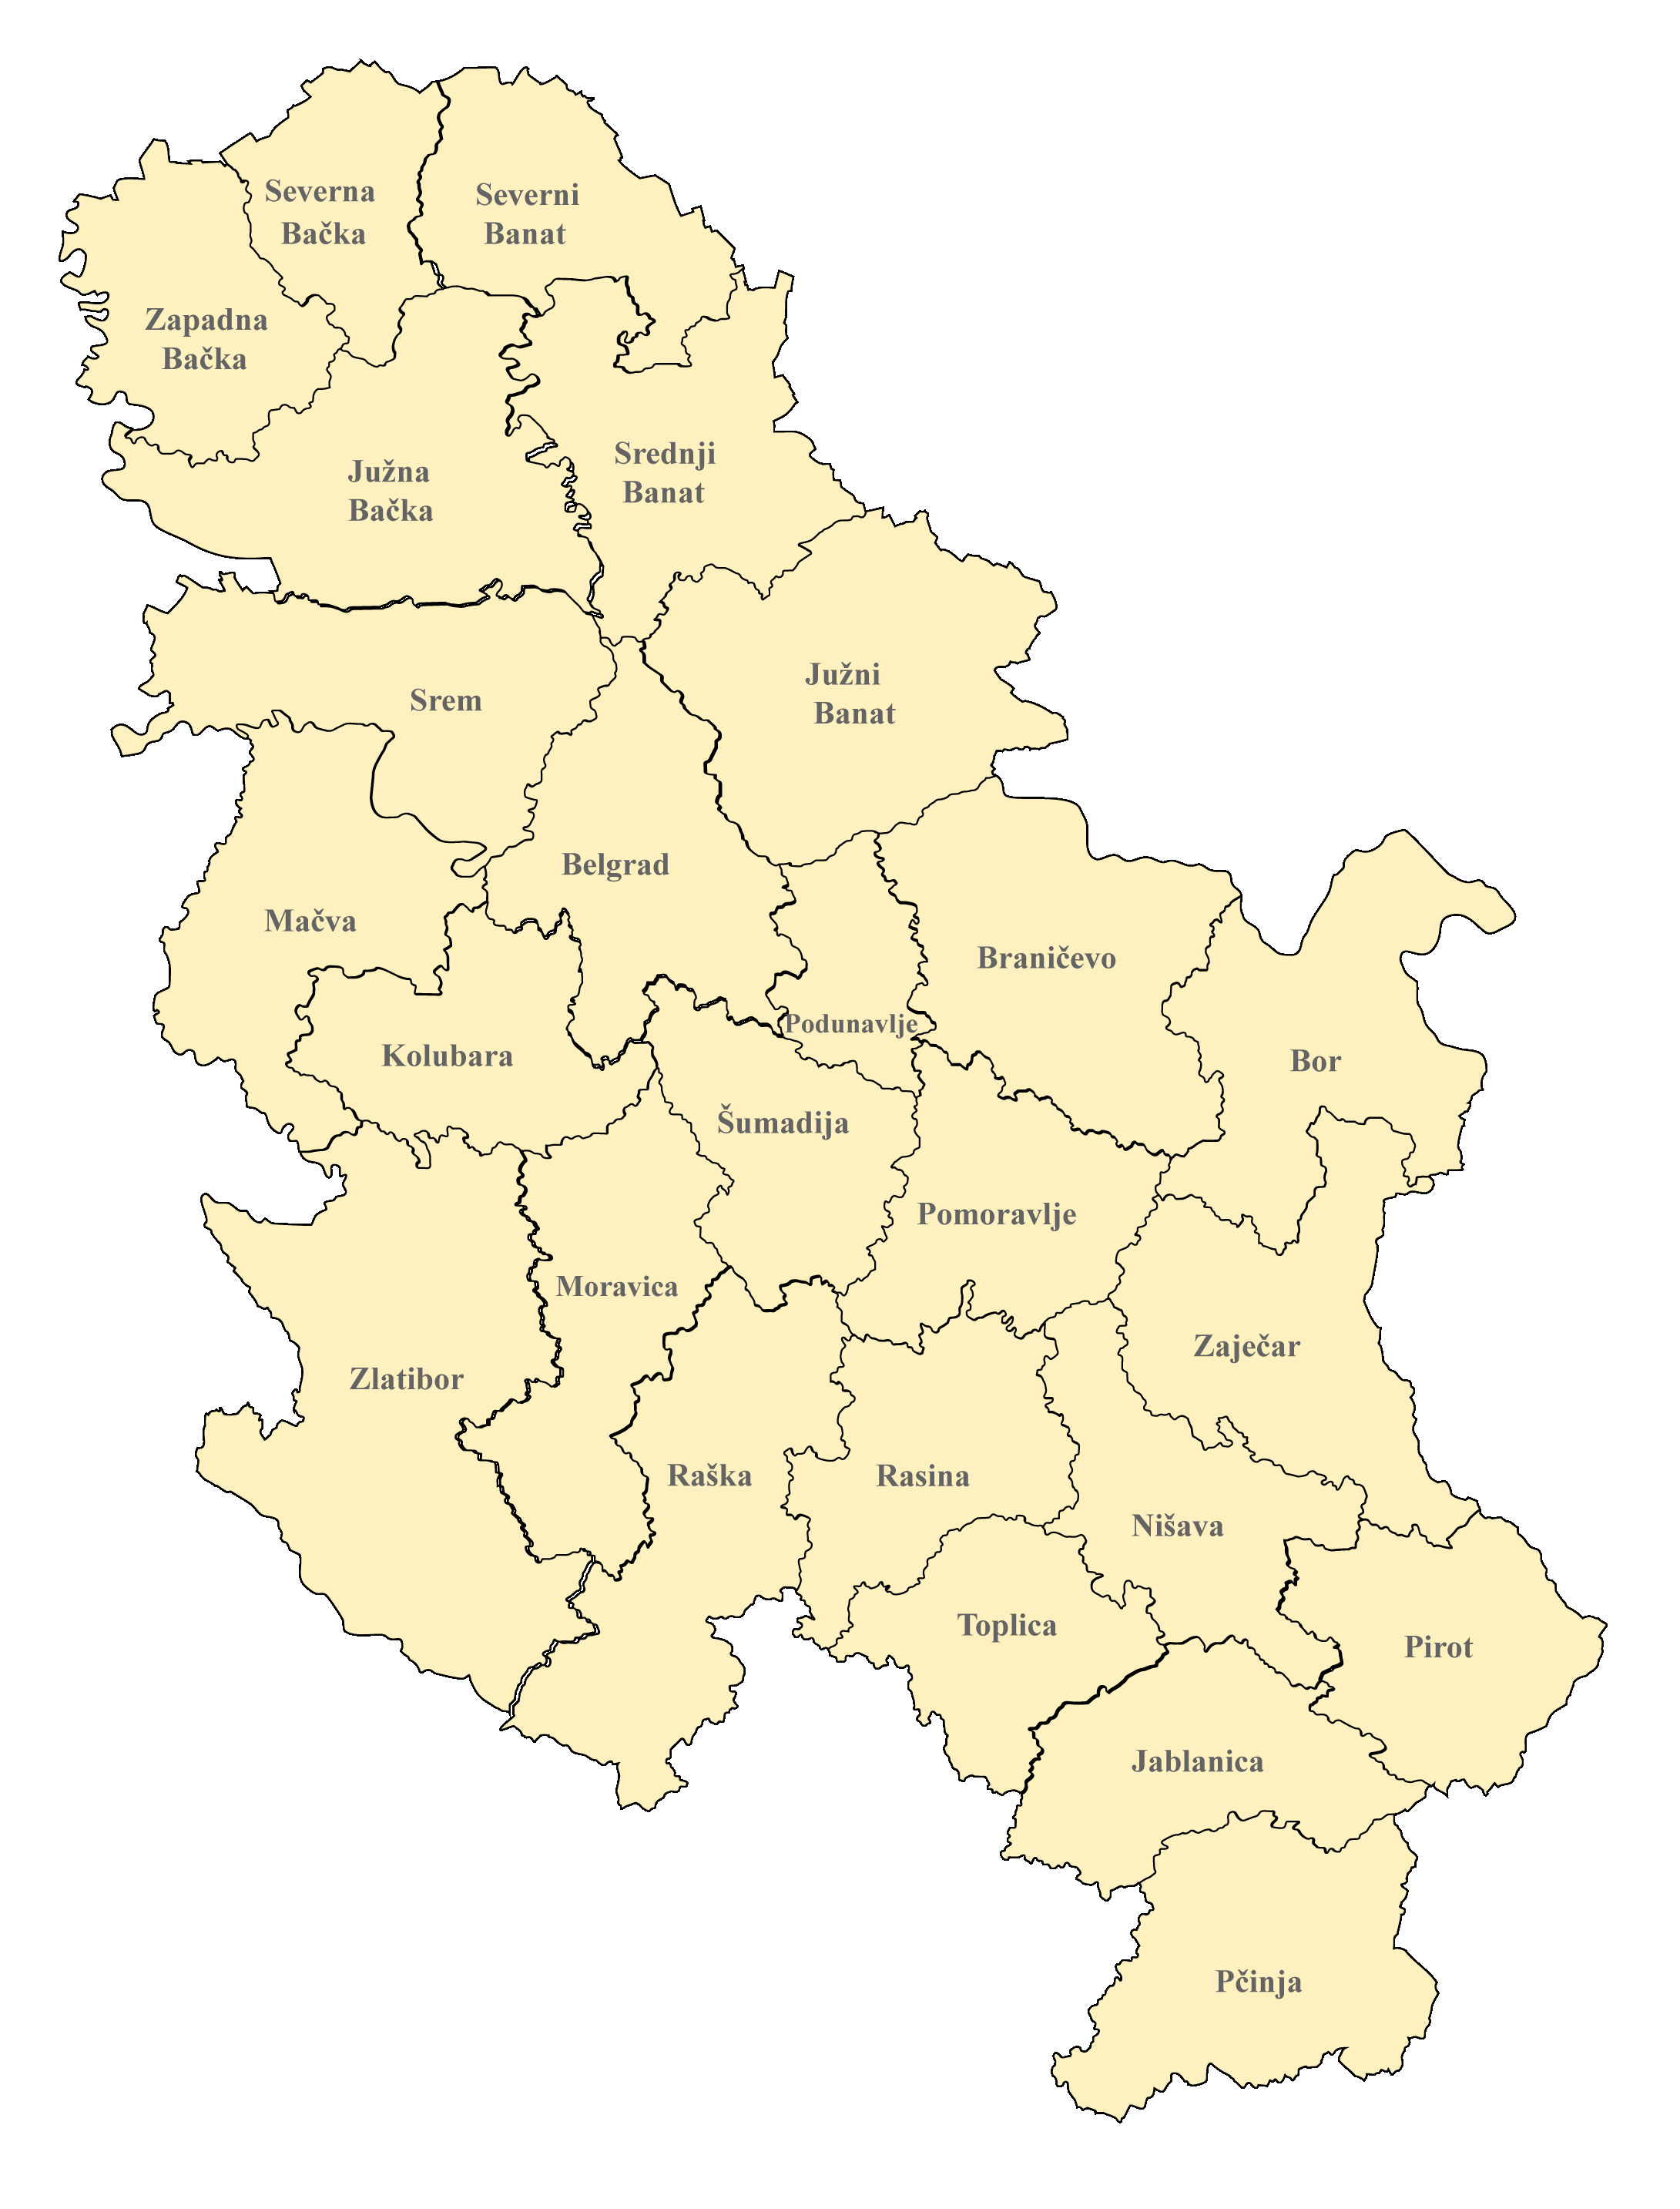 Serbien Karte nach Regionen gegliedert